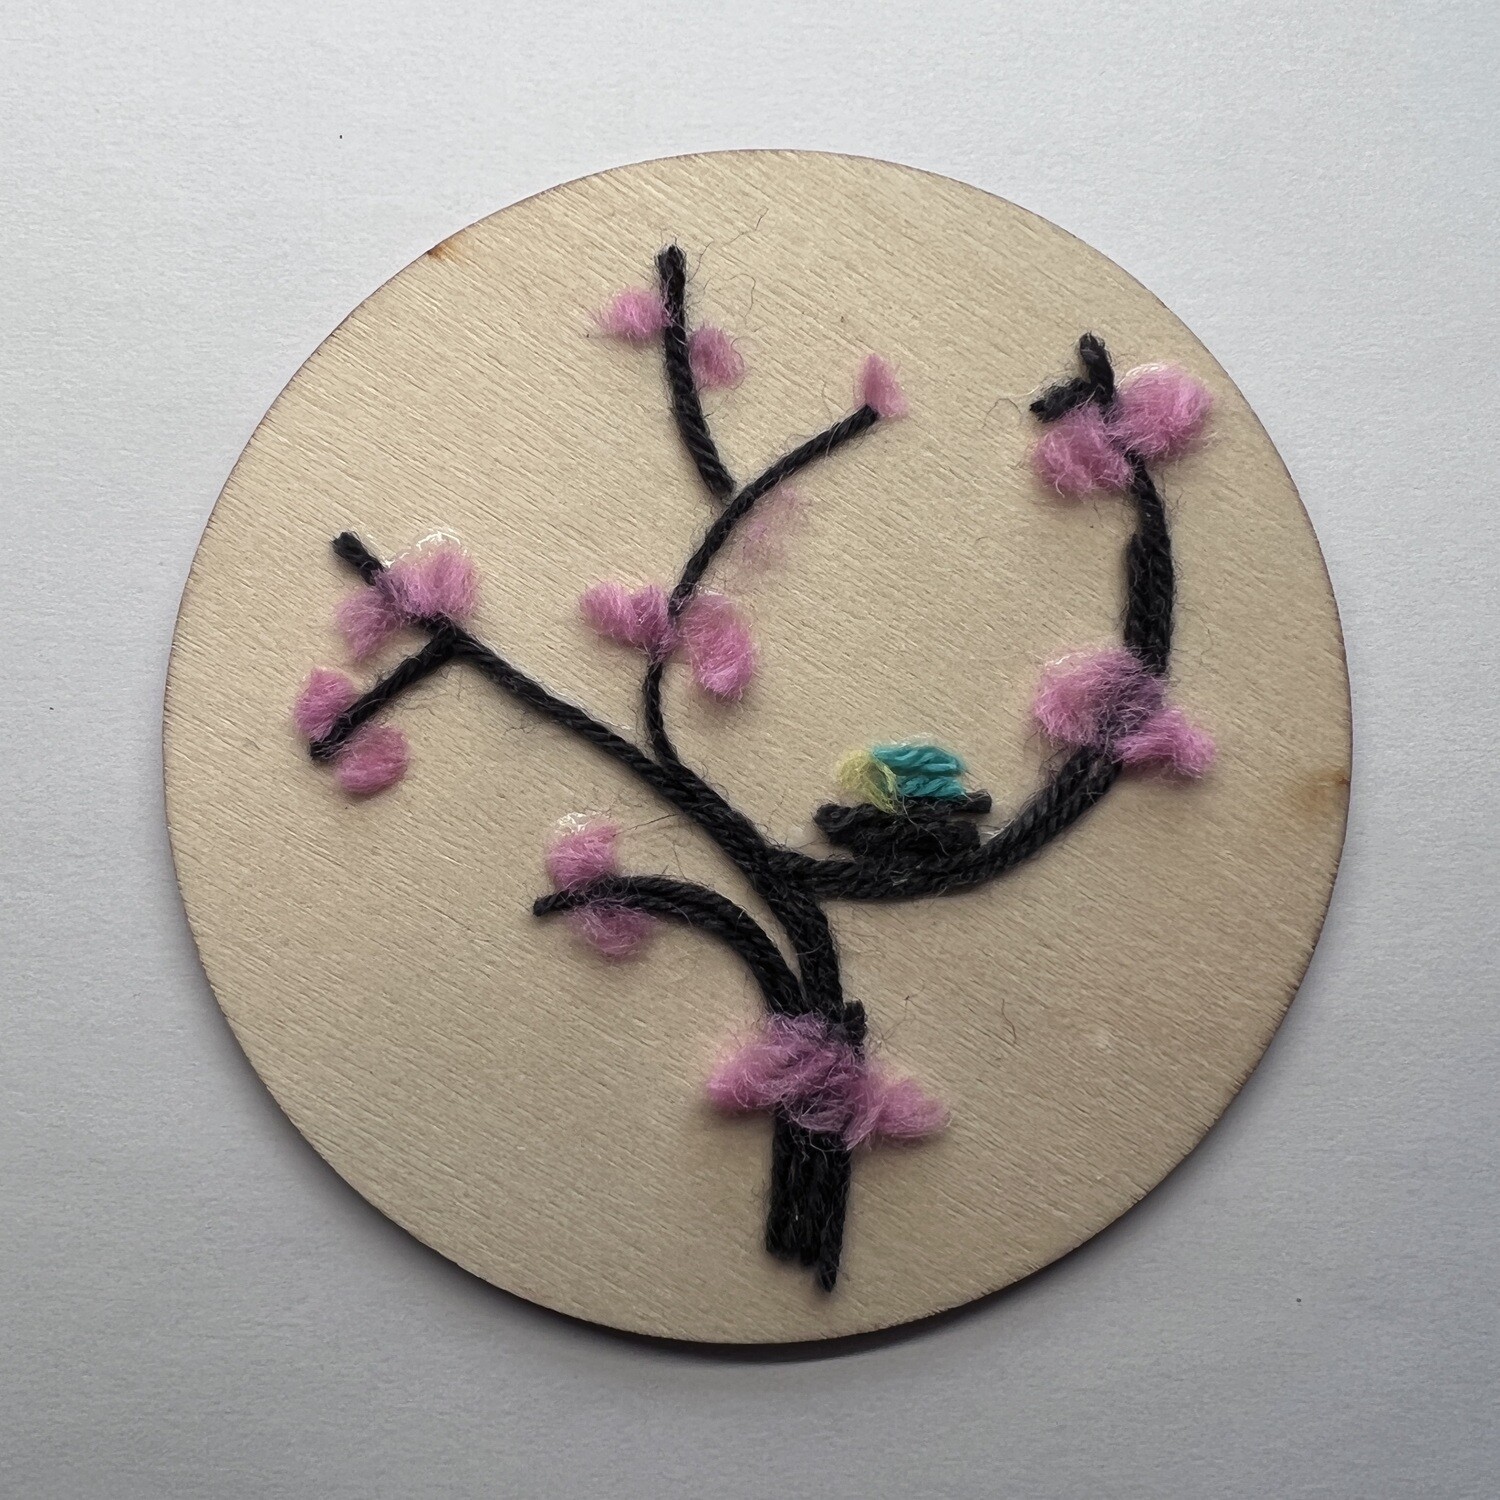 Spring Blooms Tweet Wall Hanging - Yarn Art 4